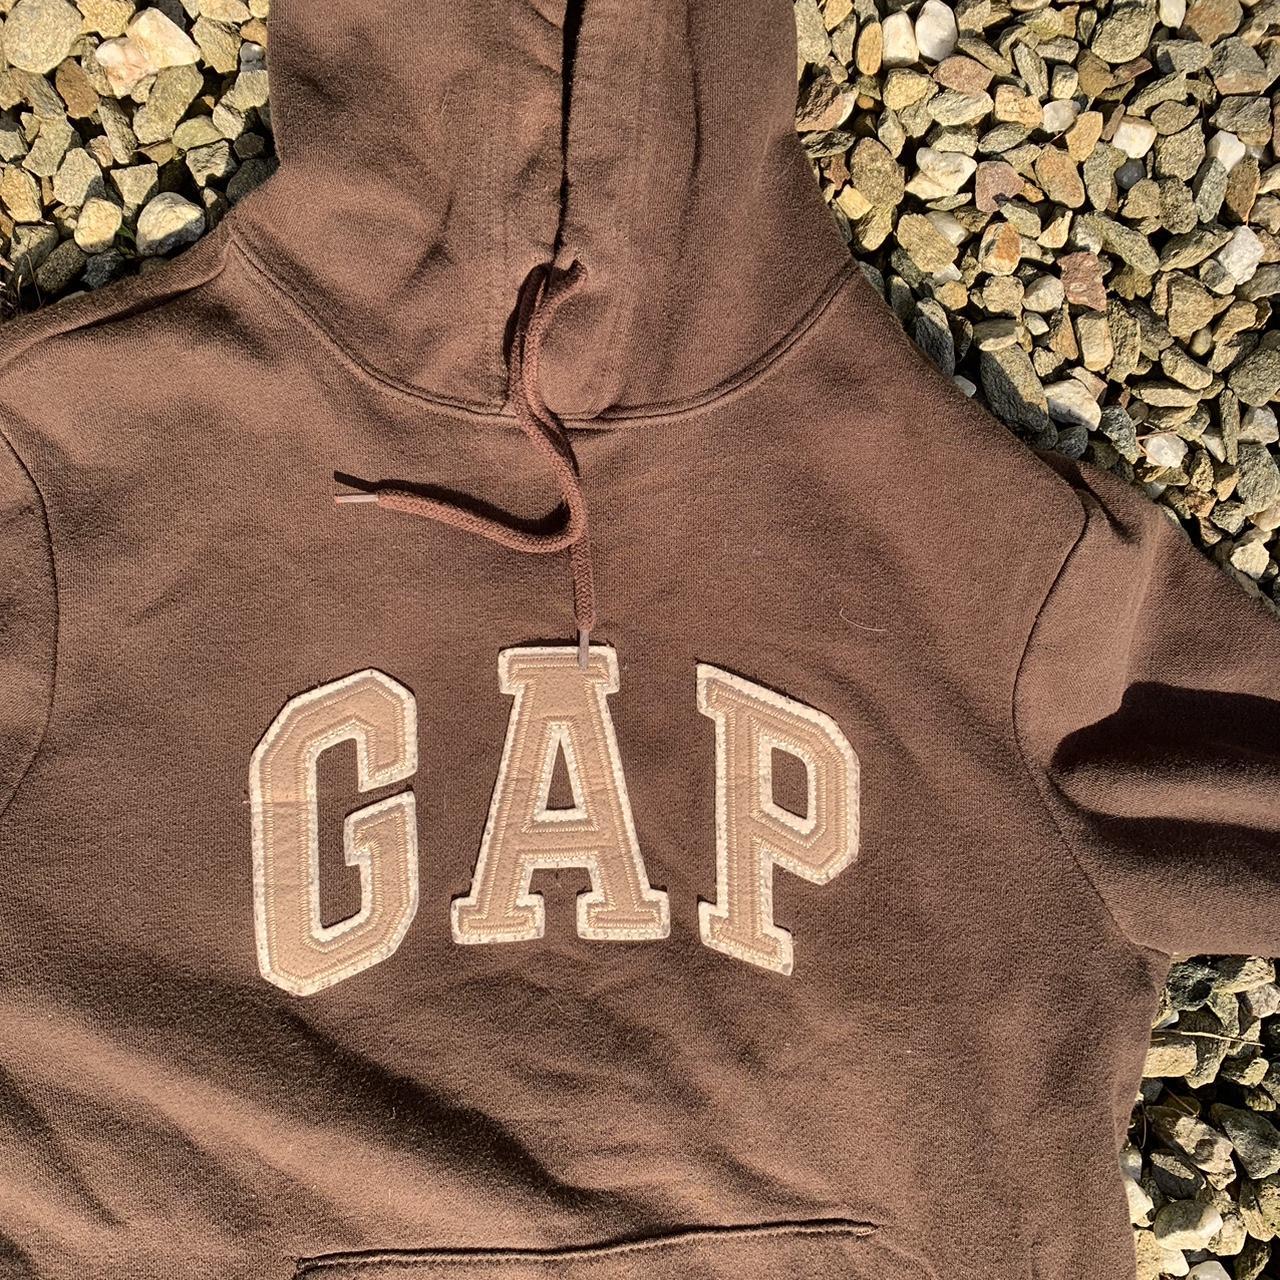 90s vintage gap hoodie. Brown with a beige gap logo - Depop